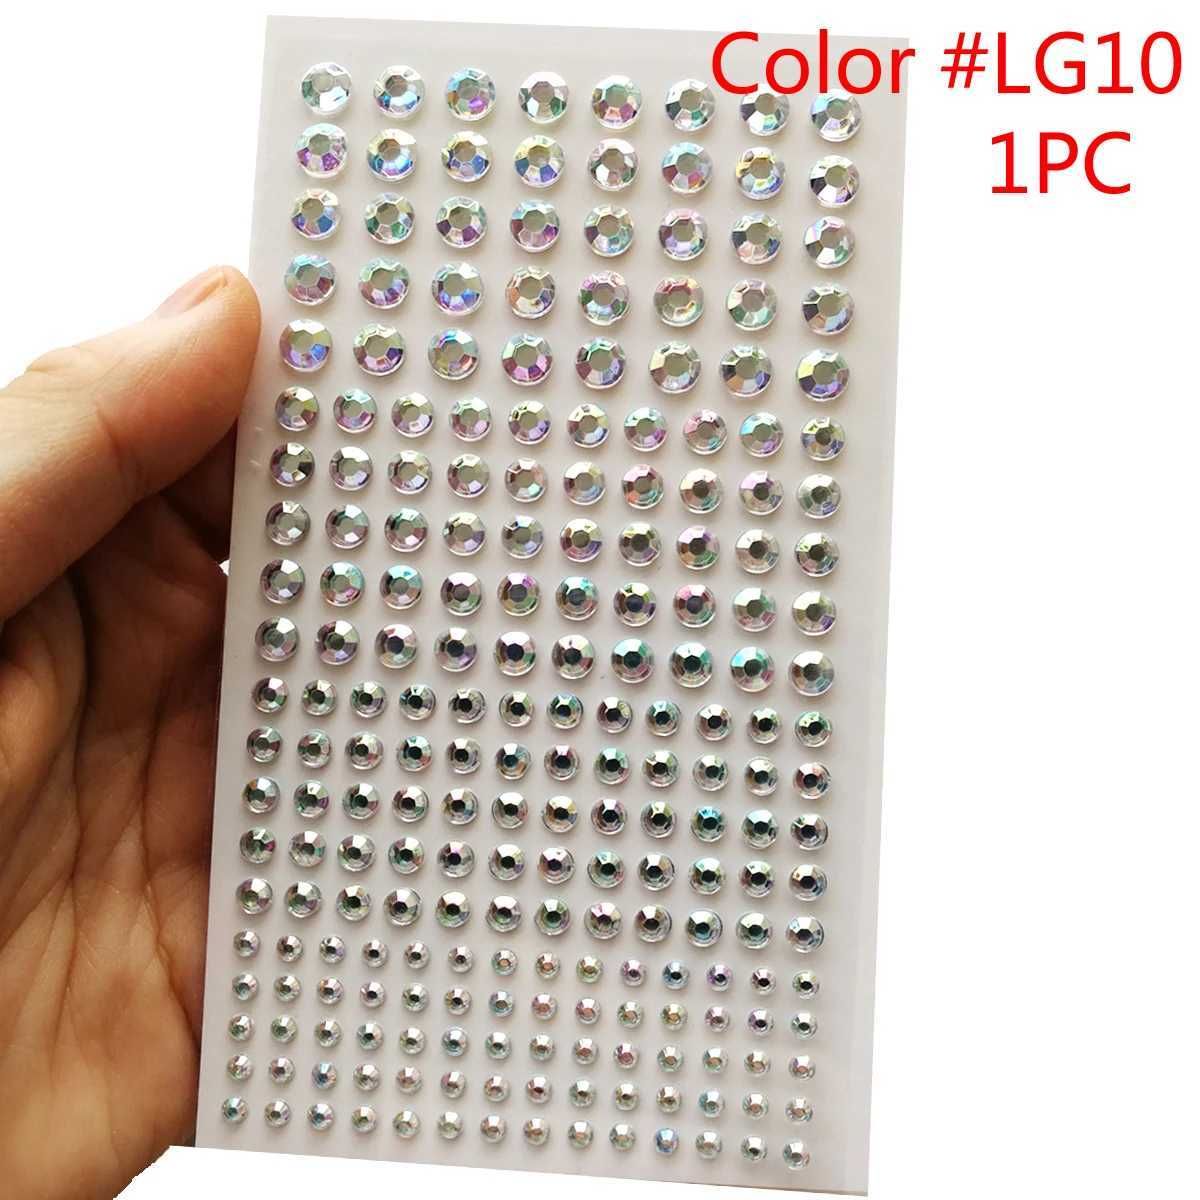 1pc Color Lg10